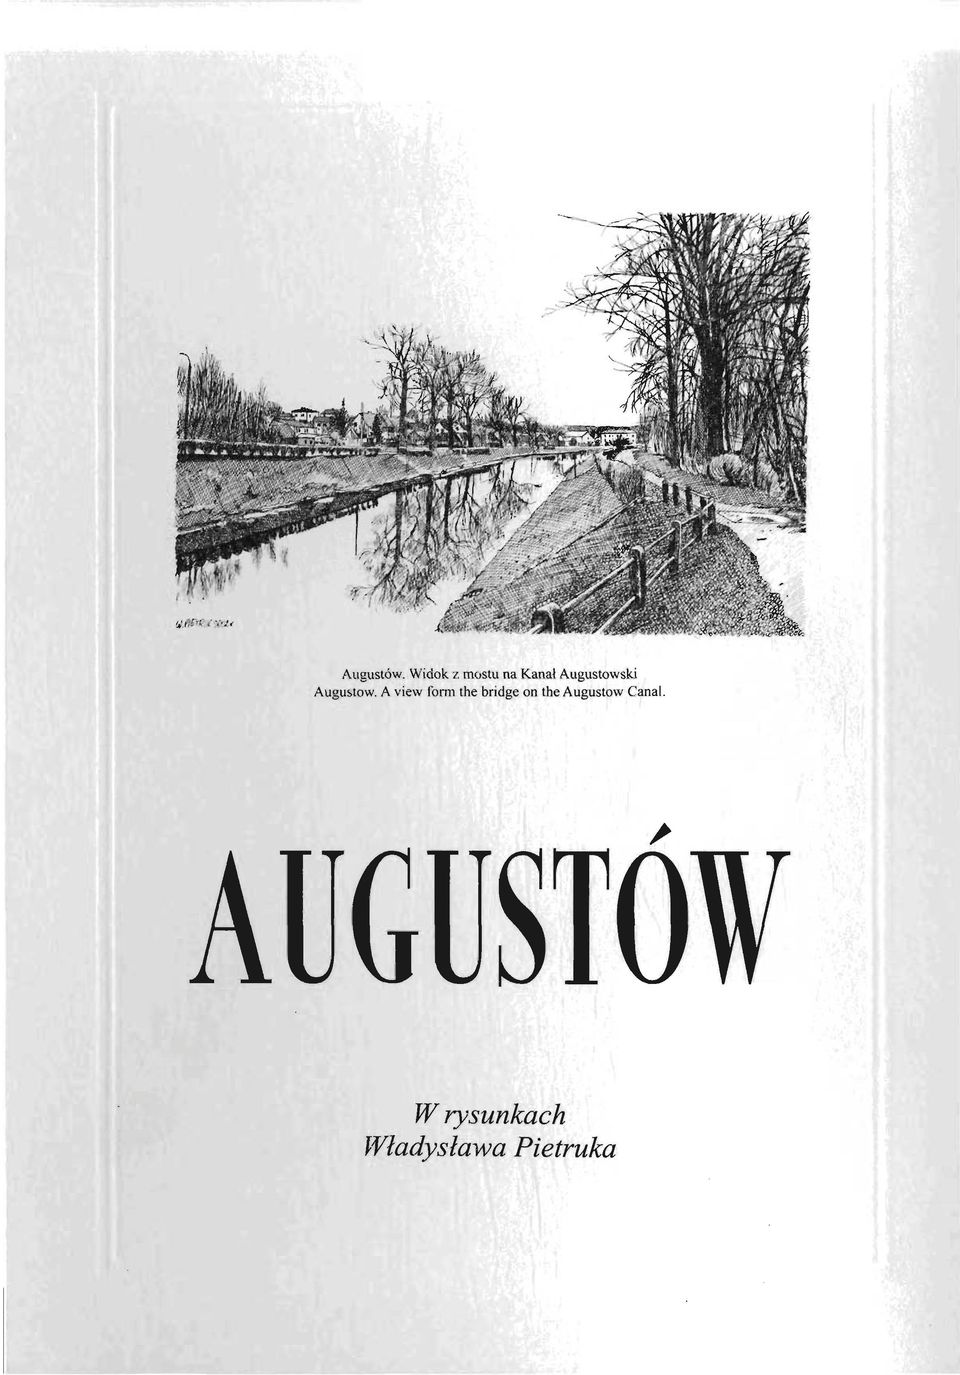 Augustowski Augustow.